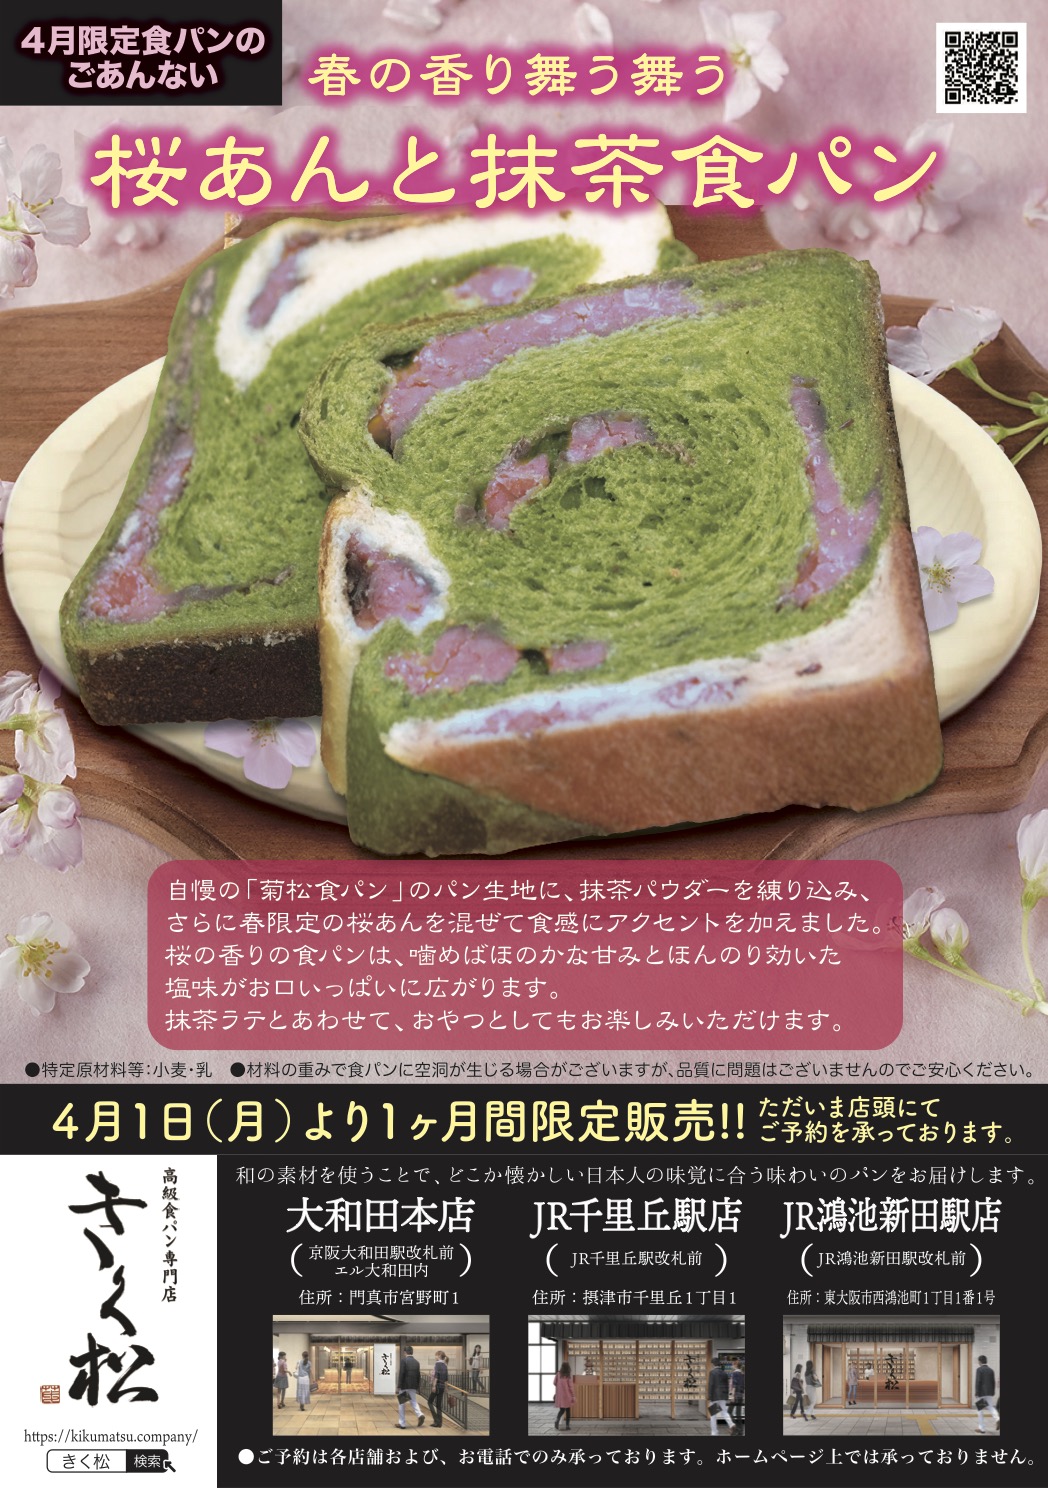 4月の限定食パンは【春の香り舞う舞う 桜あんと抹茶食パン】